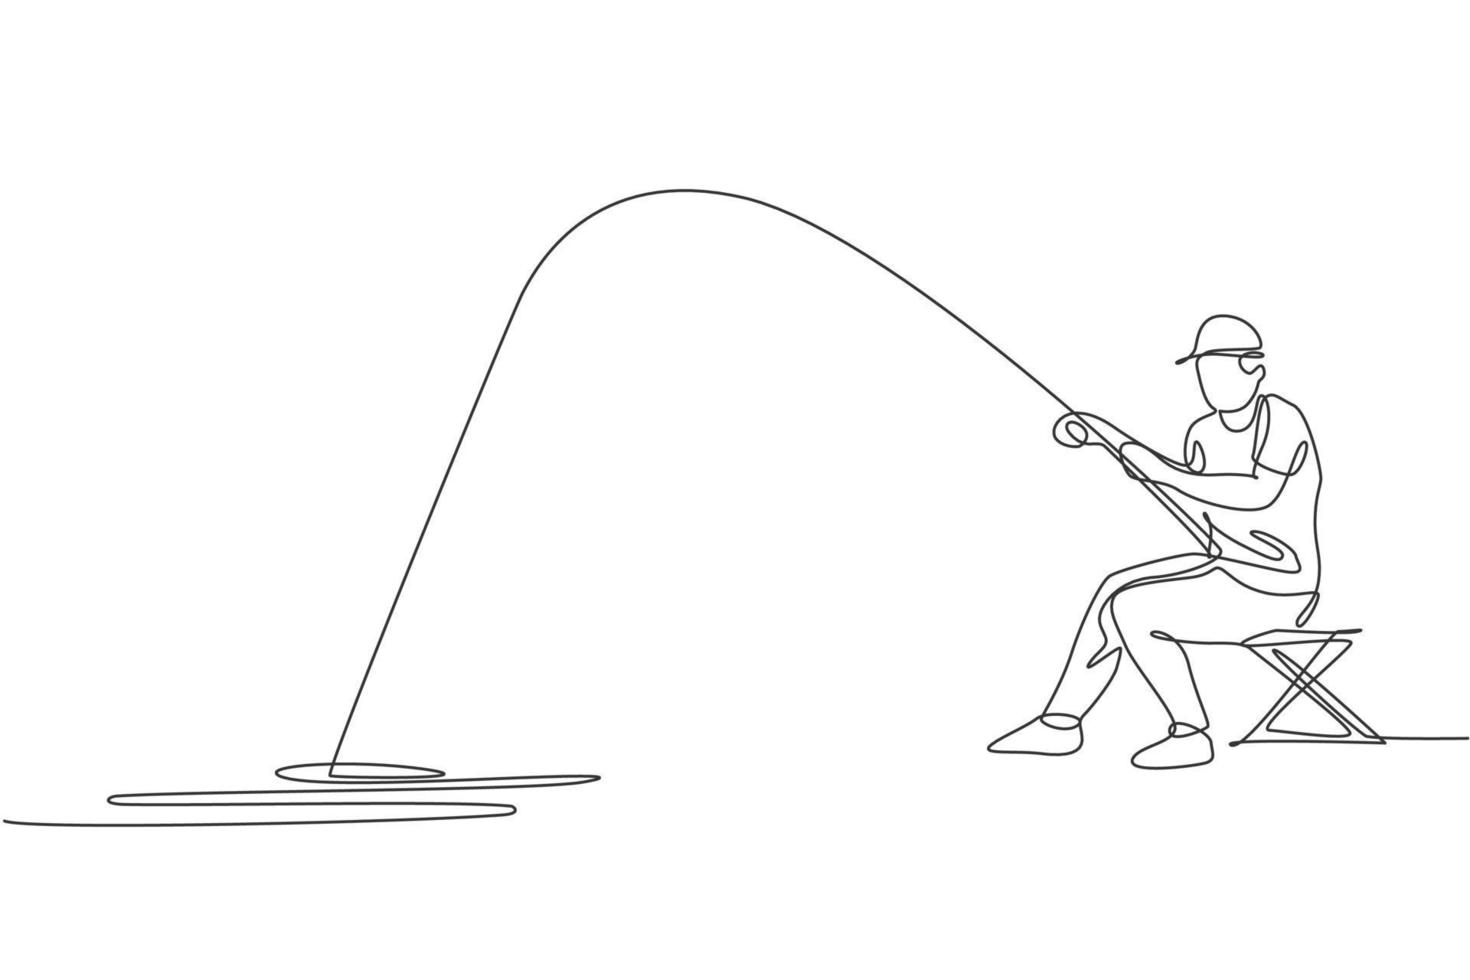 disegno a linea continua singola giovane pescatore felice pesca a mosca pesce basso nel fiume aperto mentre si trova su una sedia. concetto di vacanza per hobby di pesca. grafico di illustrazione vettoriale di disegno di una linea alla moda